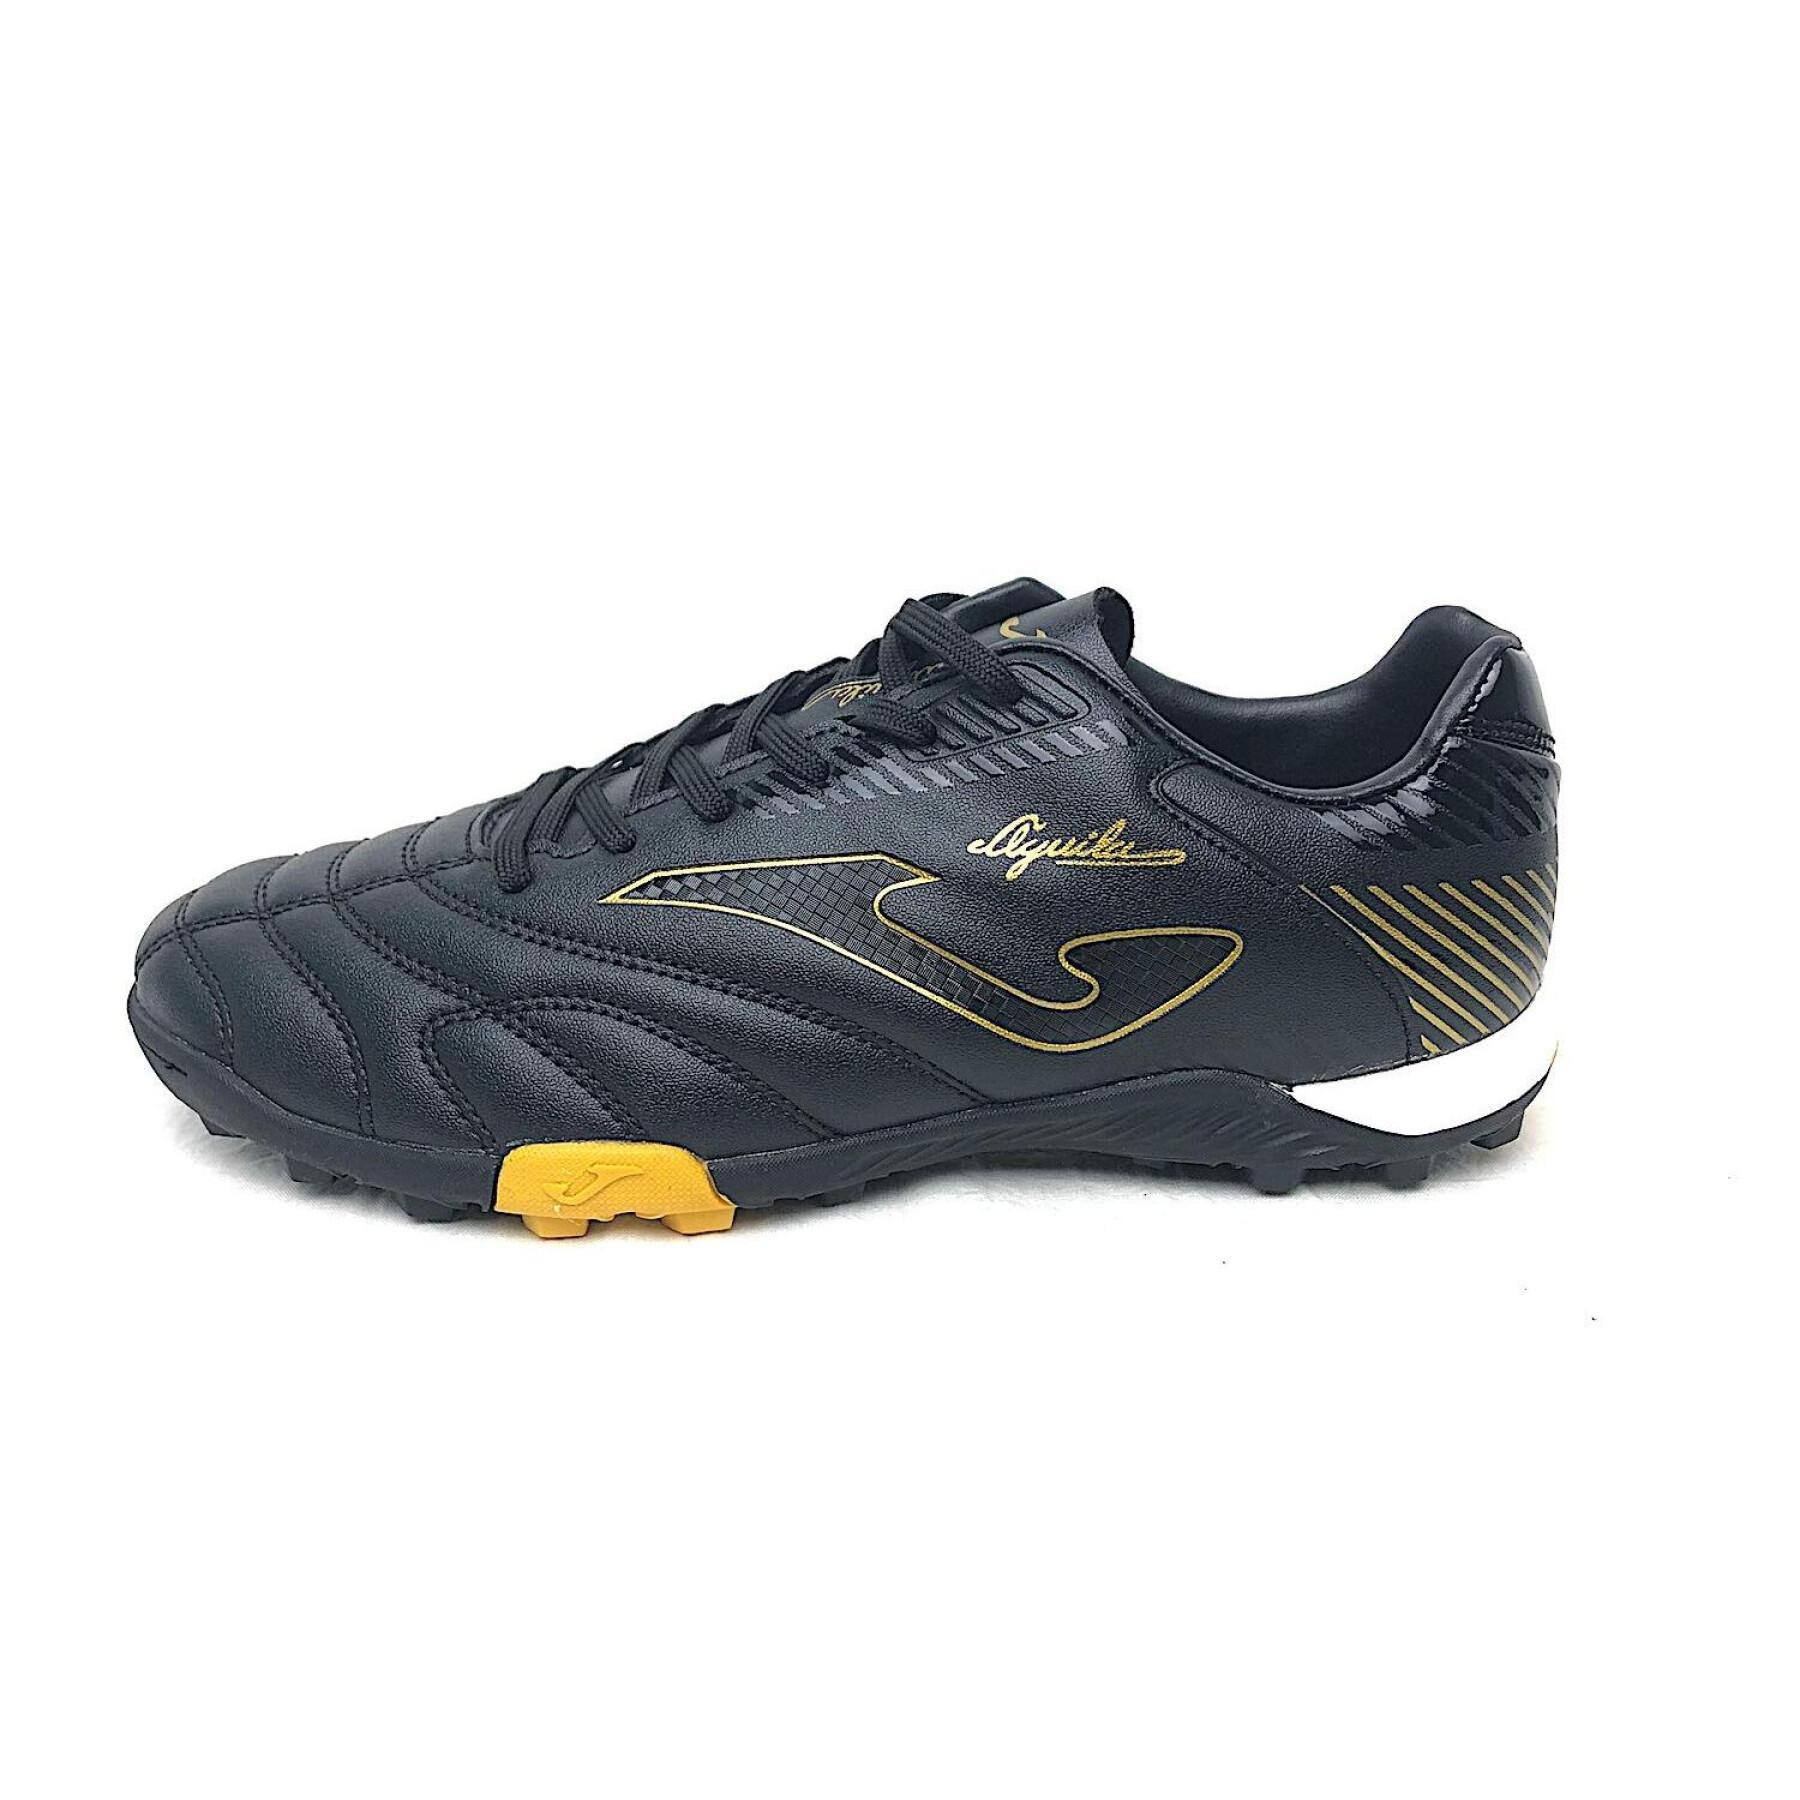 Shoes Joma Aguila Turf 2001 ORO